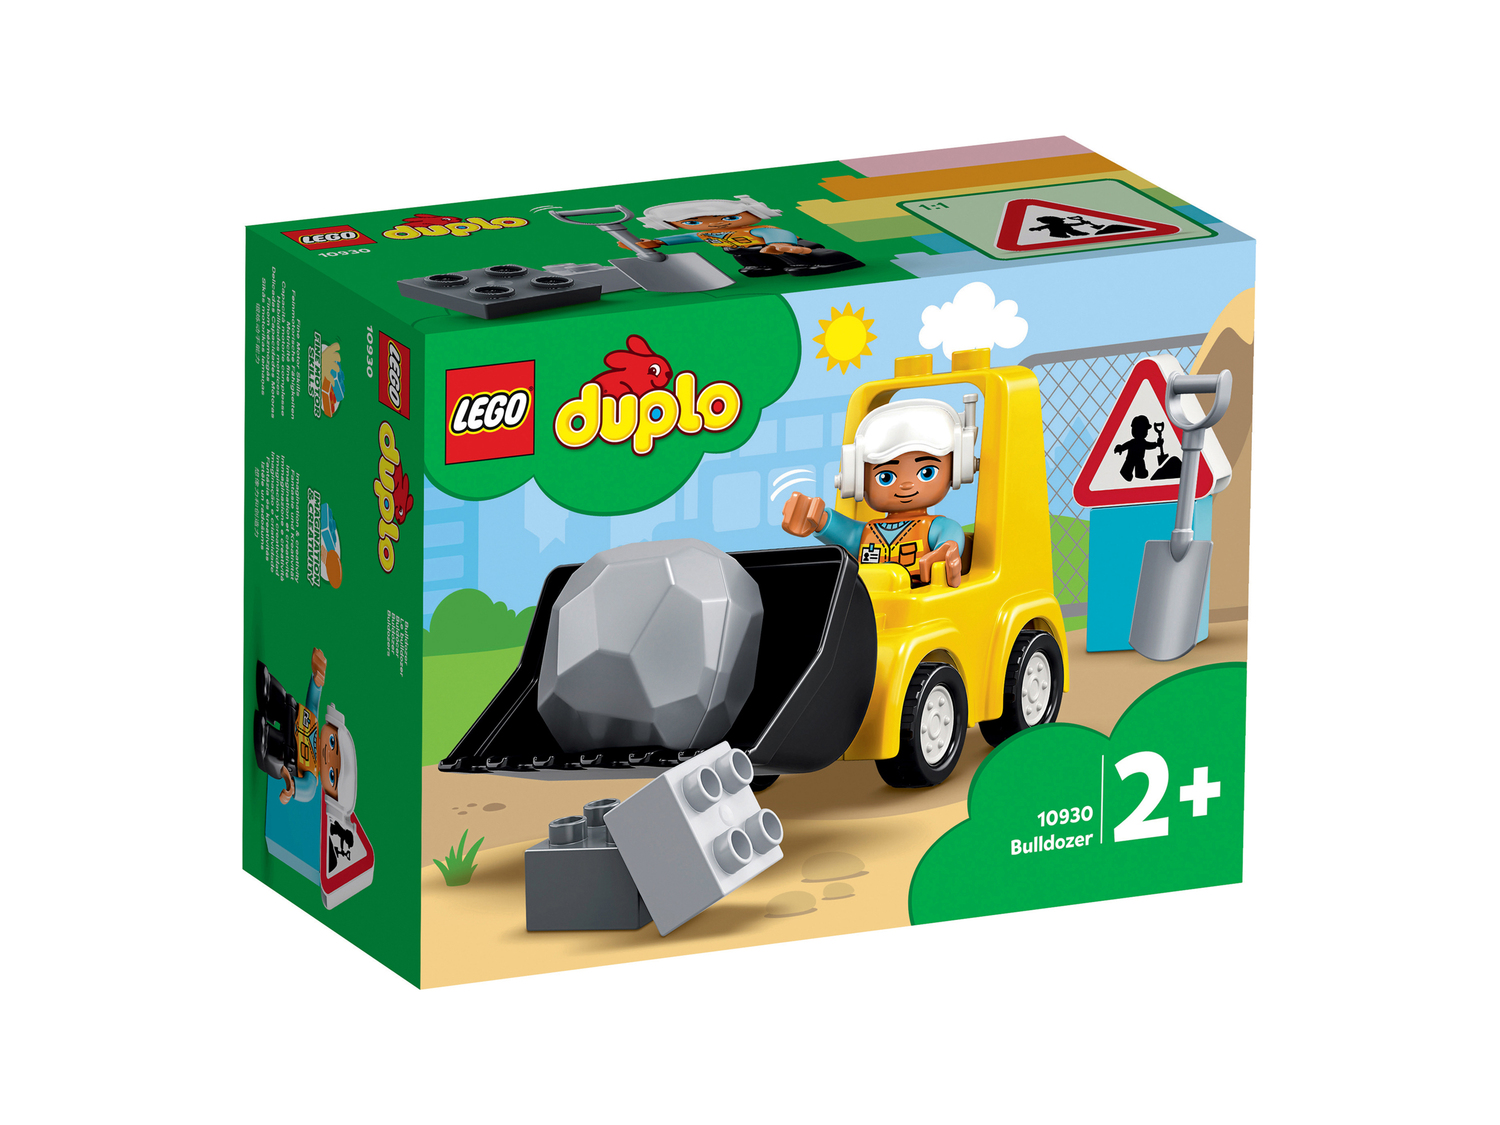 Costruzioni Duplo o Lego Friends Lego, prezzo 8.99 &#8364;  

Caratteristiche